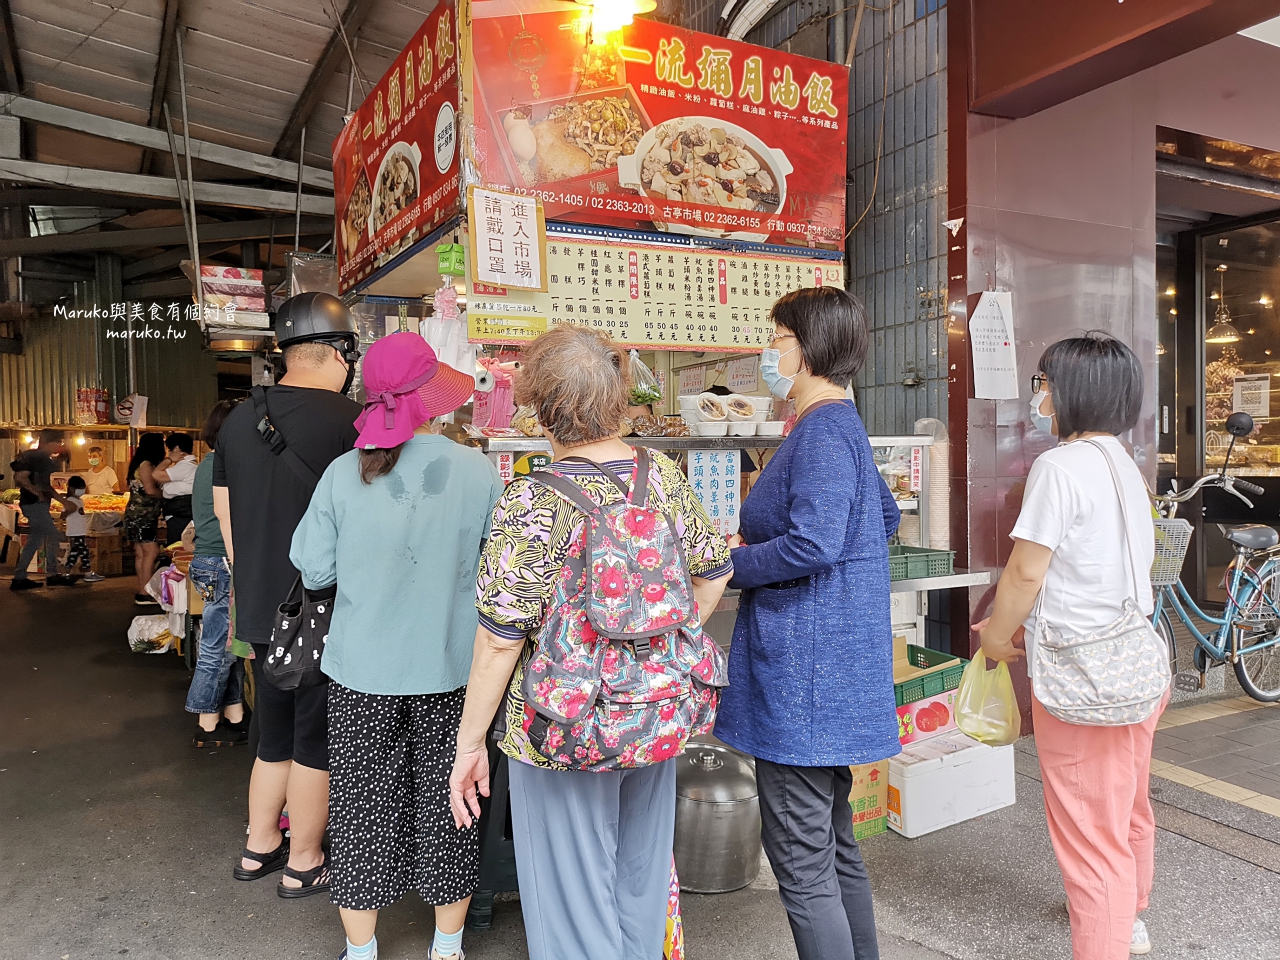 【台北】一流油飯 古亭市場在地美食 油飯 芋頭米粉湯 港式蘿蔔糕 樣樣推